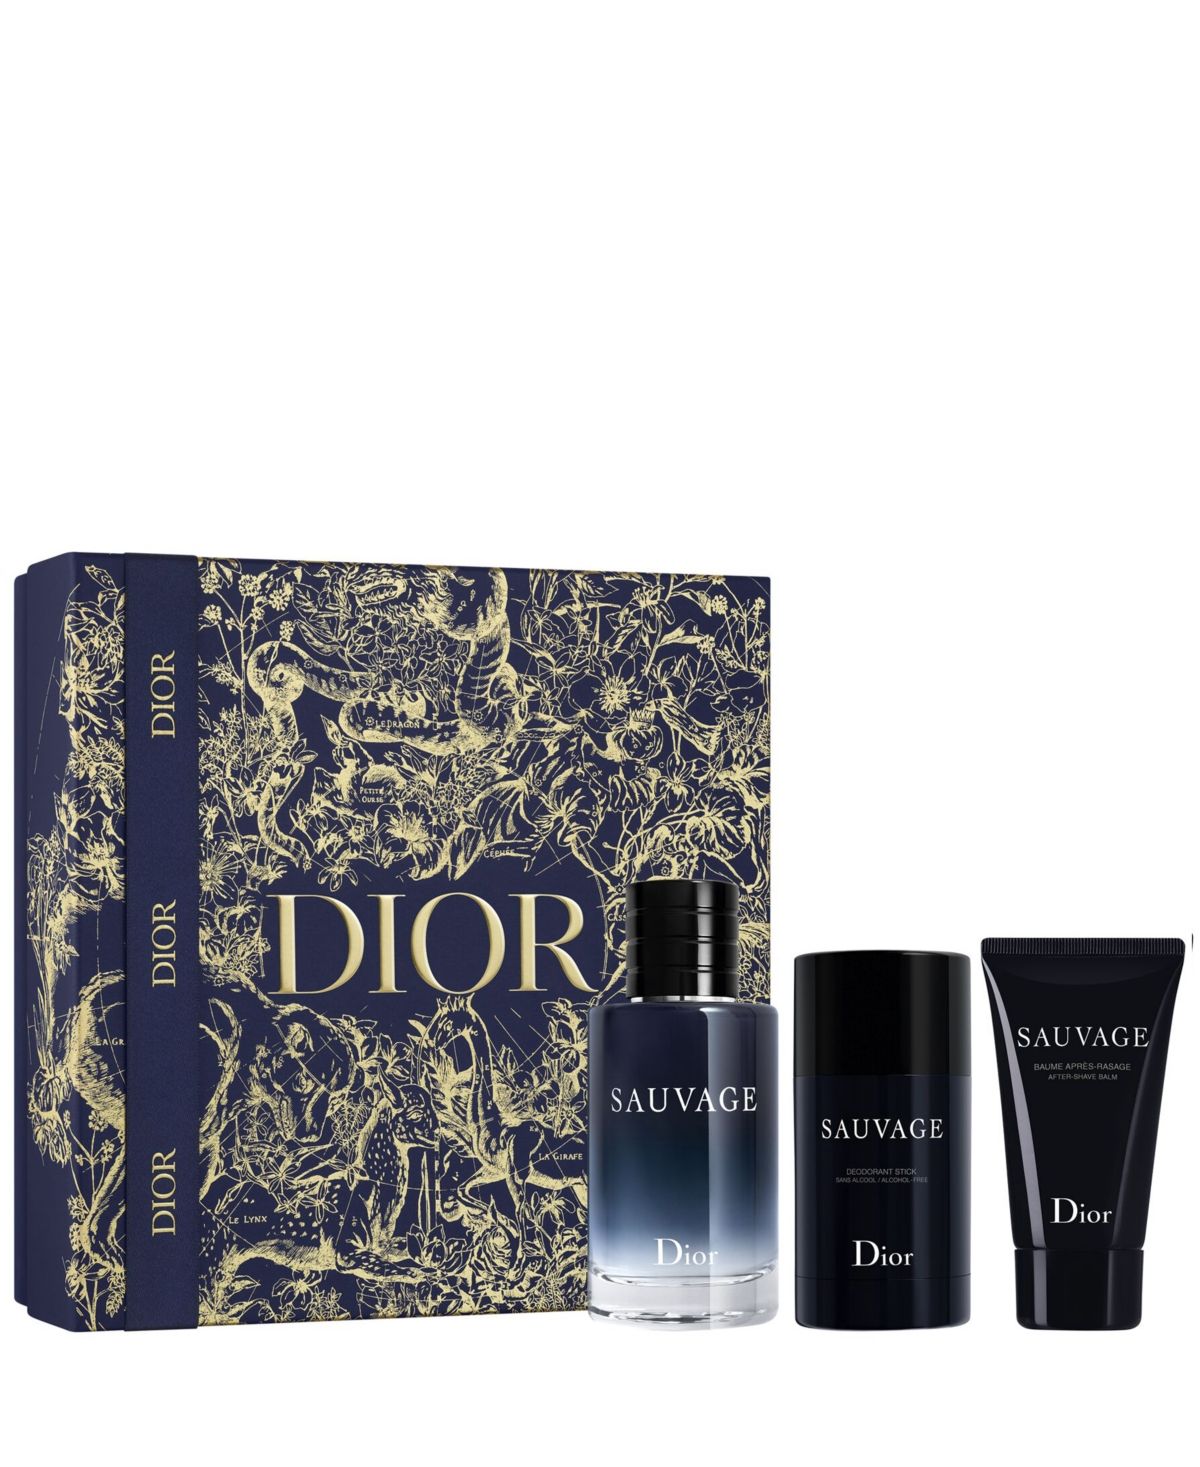 Dior Men's 3-Pc. Sauvage Eau de Toilette Limited-Edition Gift Set | Macys (US)